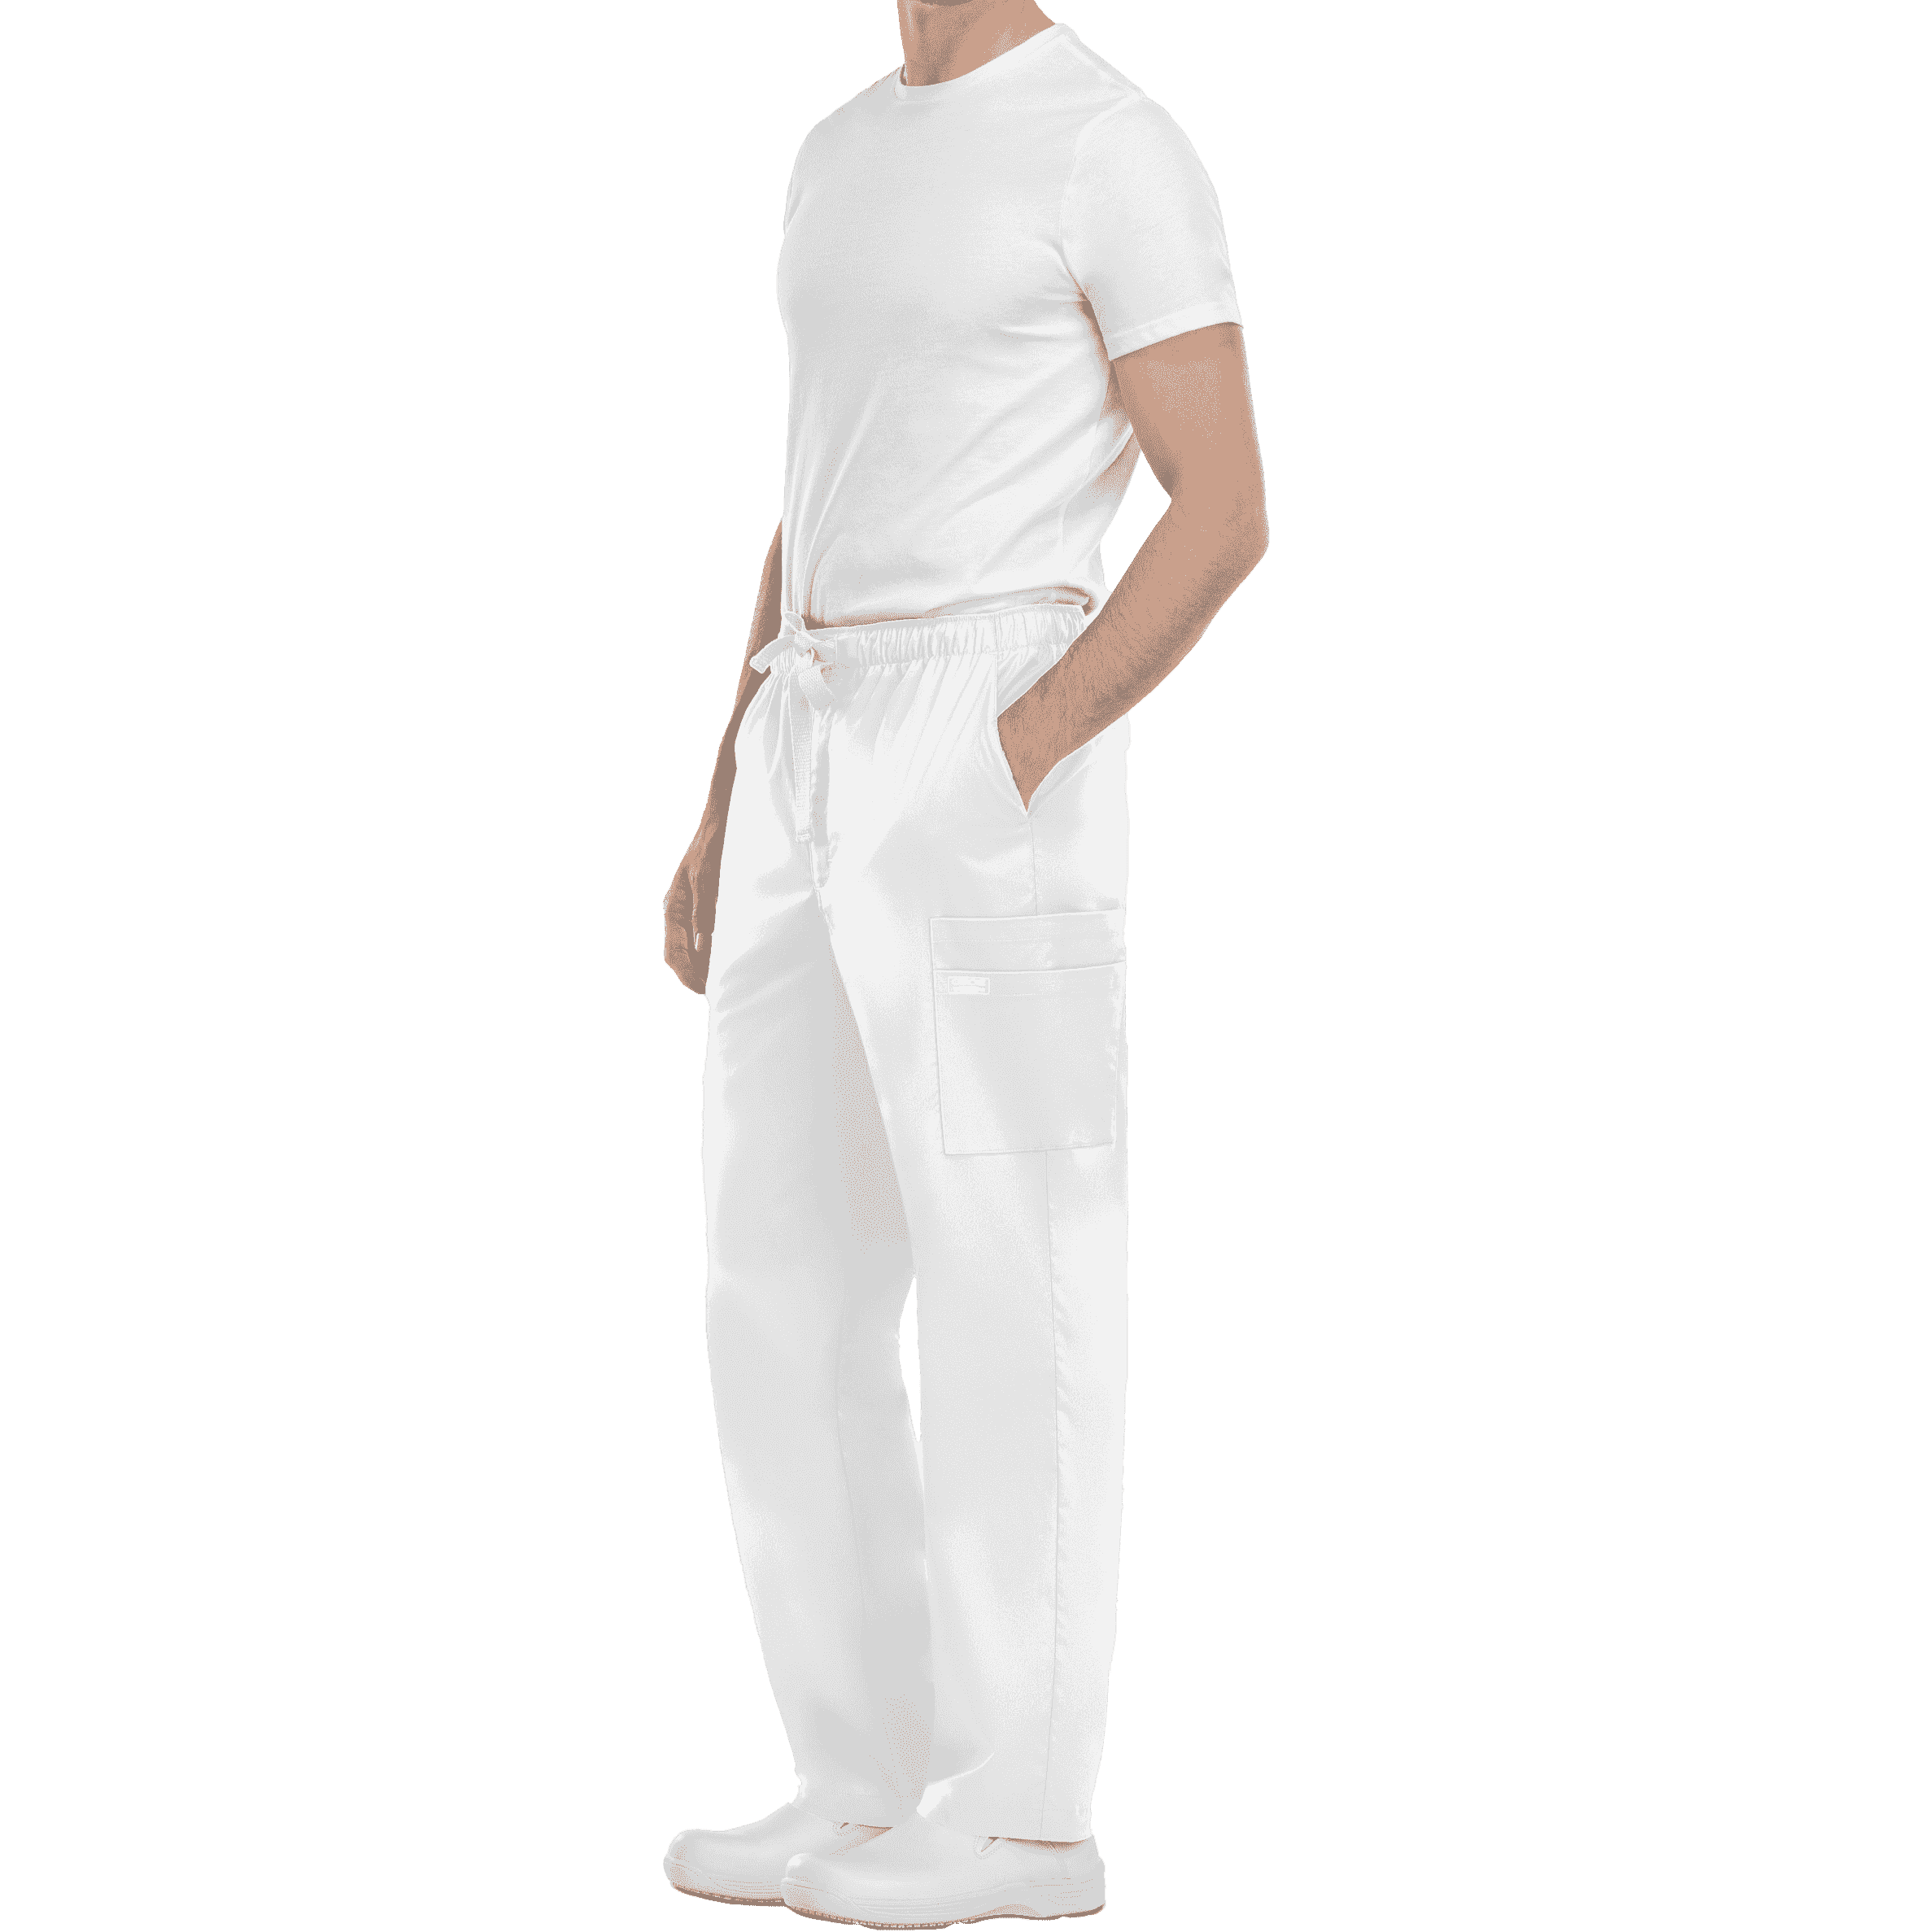 Pantalón sanitario cargo WW4243 Blanco